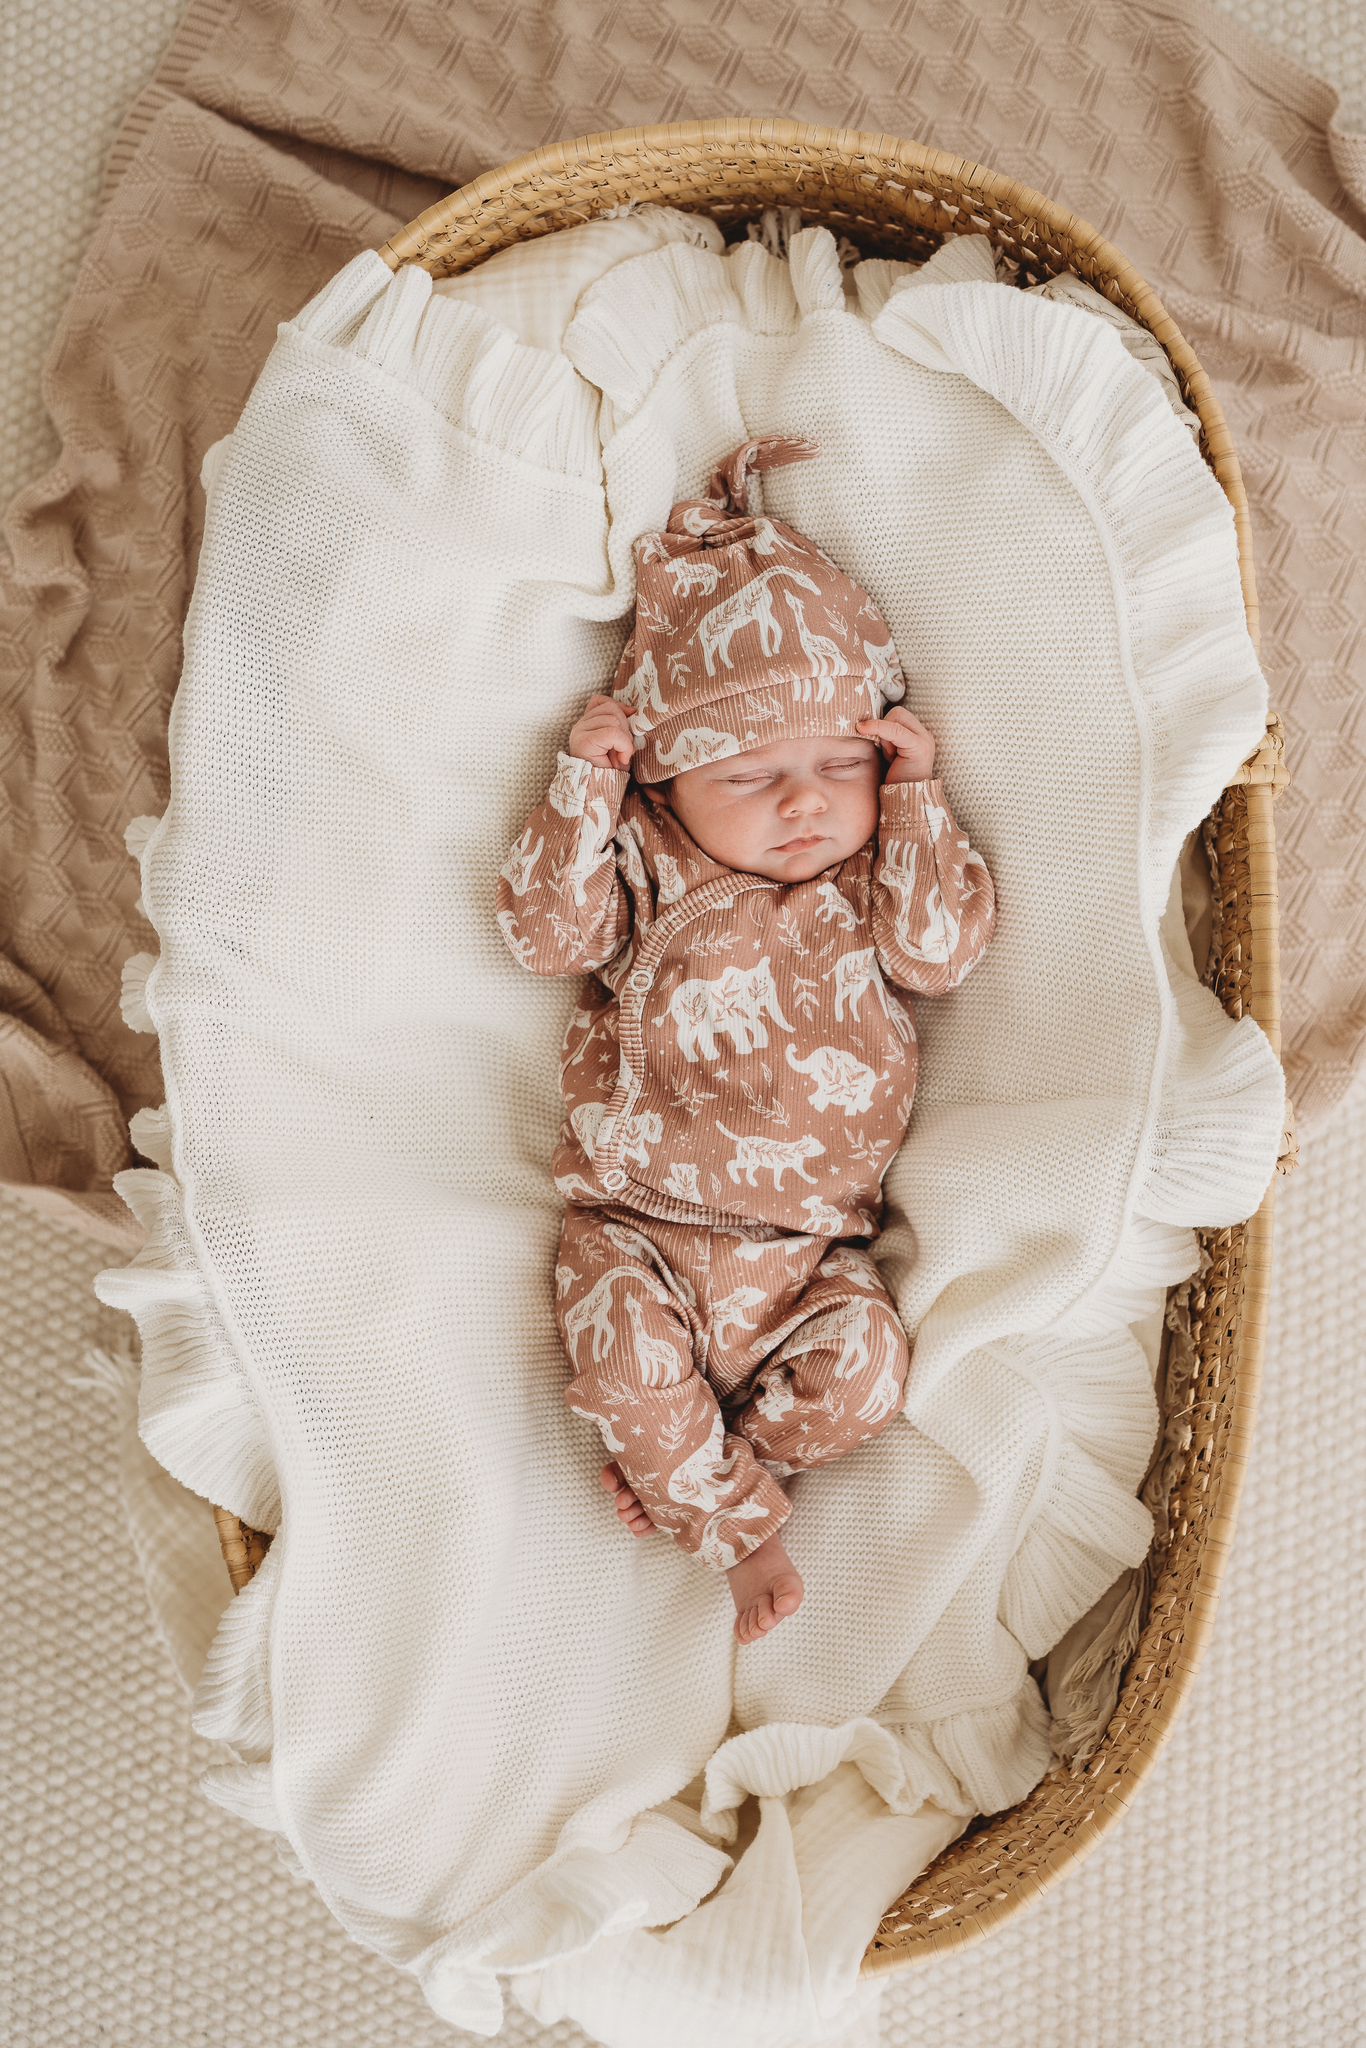 Een vredige pasgeboren baby gekleed in een rompertje met patroon en bijpassende Muts Boho Jungle, heerlijk slapend in een knus mandje omringd door zachte, crèmekleurige dekens.